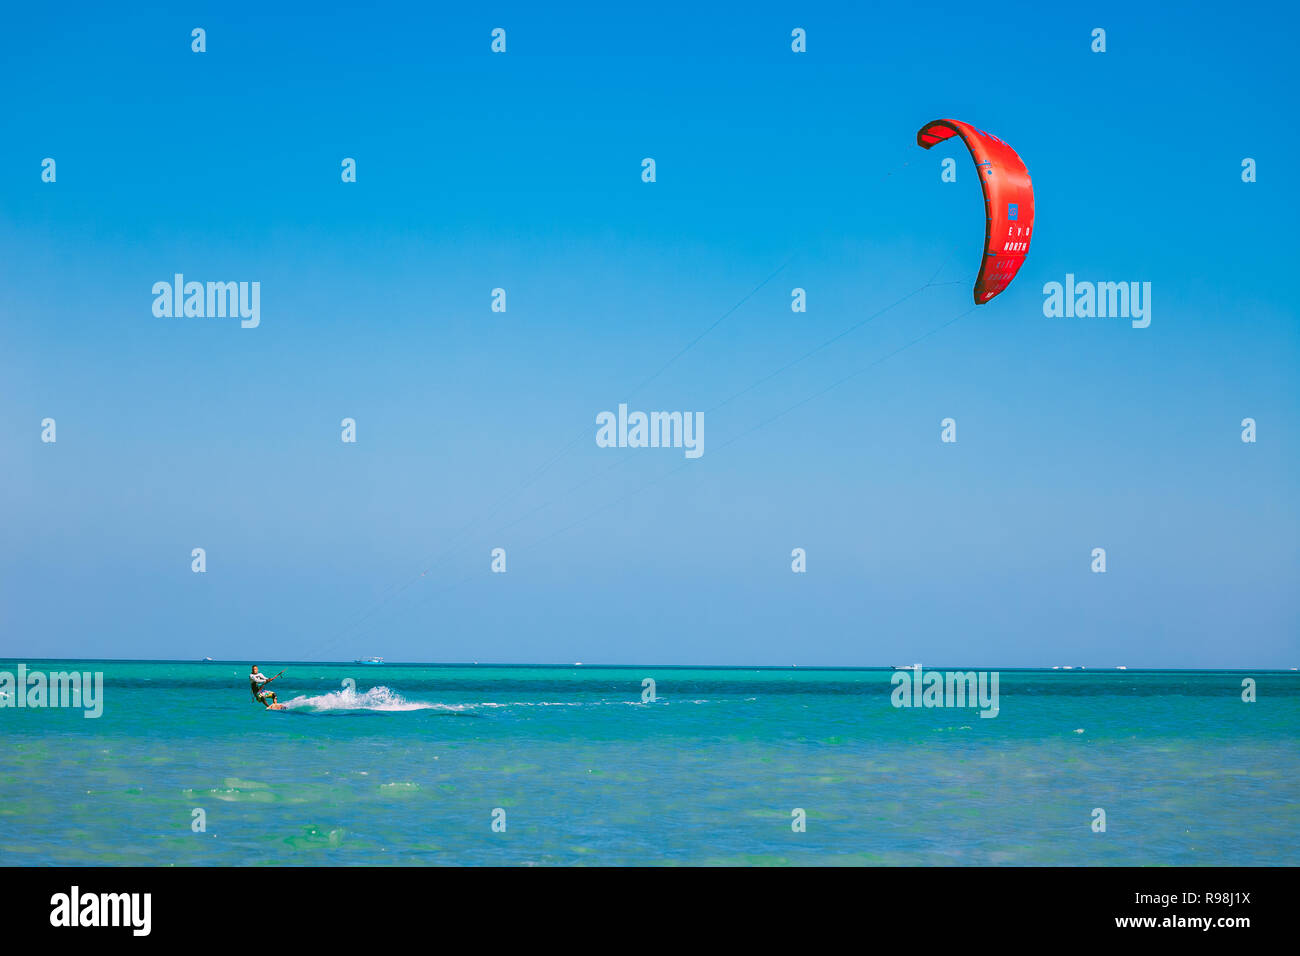 L'Egypte, Hurghada - 30 novembre, 2017 : Le kitesurfer avec red kite de glisser sur la surface de la mer Rouge. Paysage marin écrasante. Les lone kiteboarder Banque D'Images